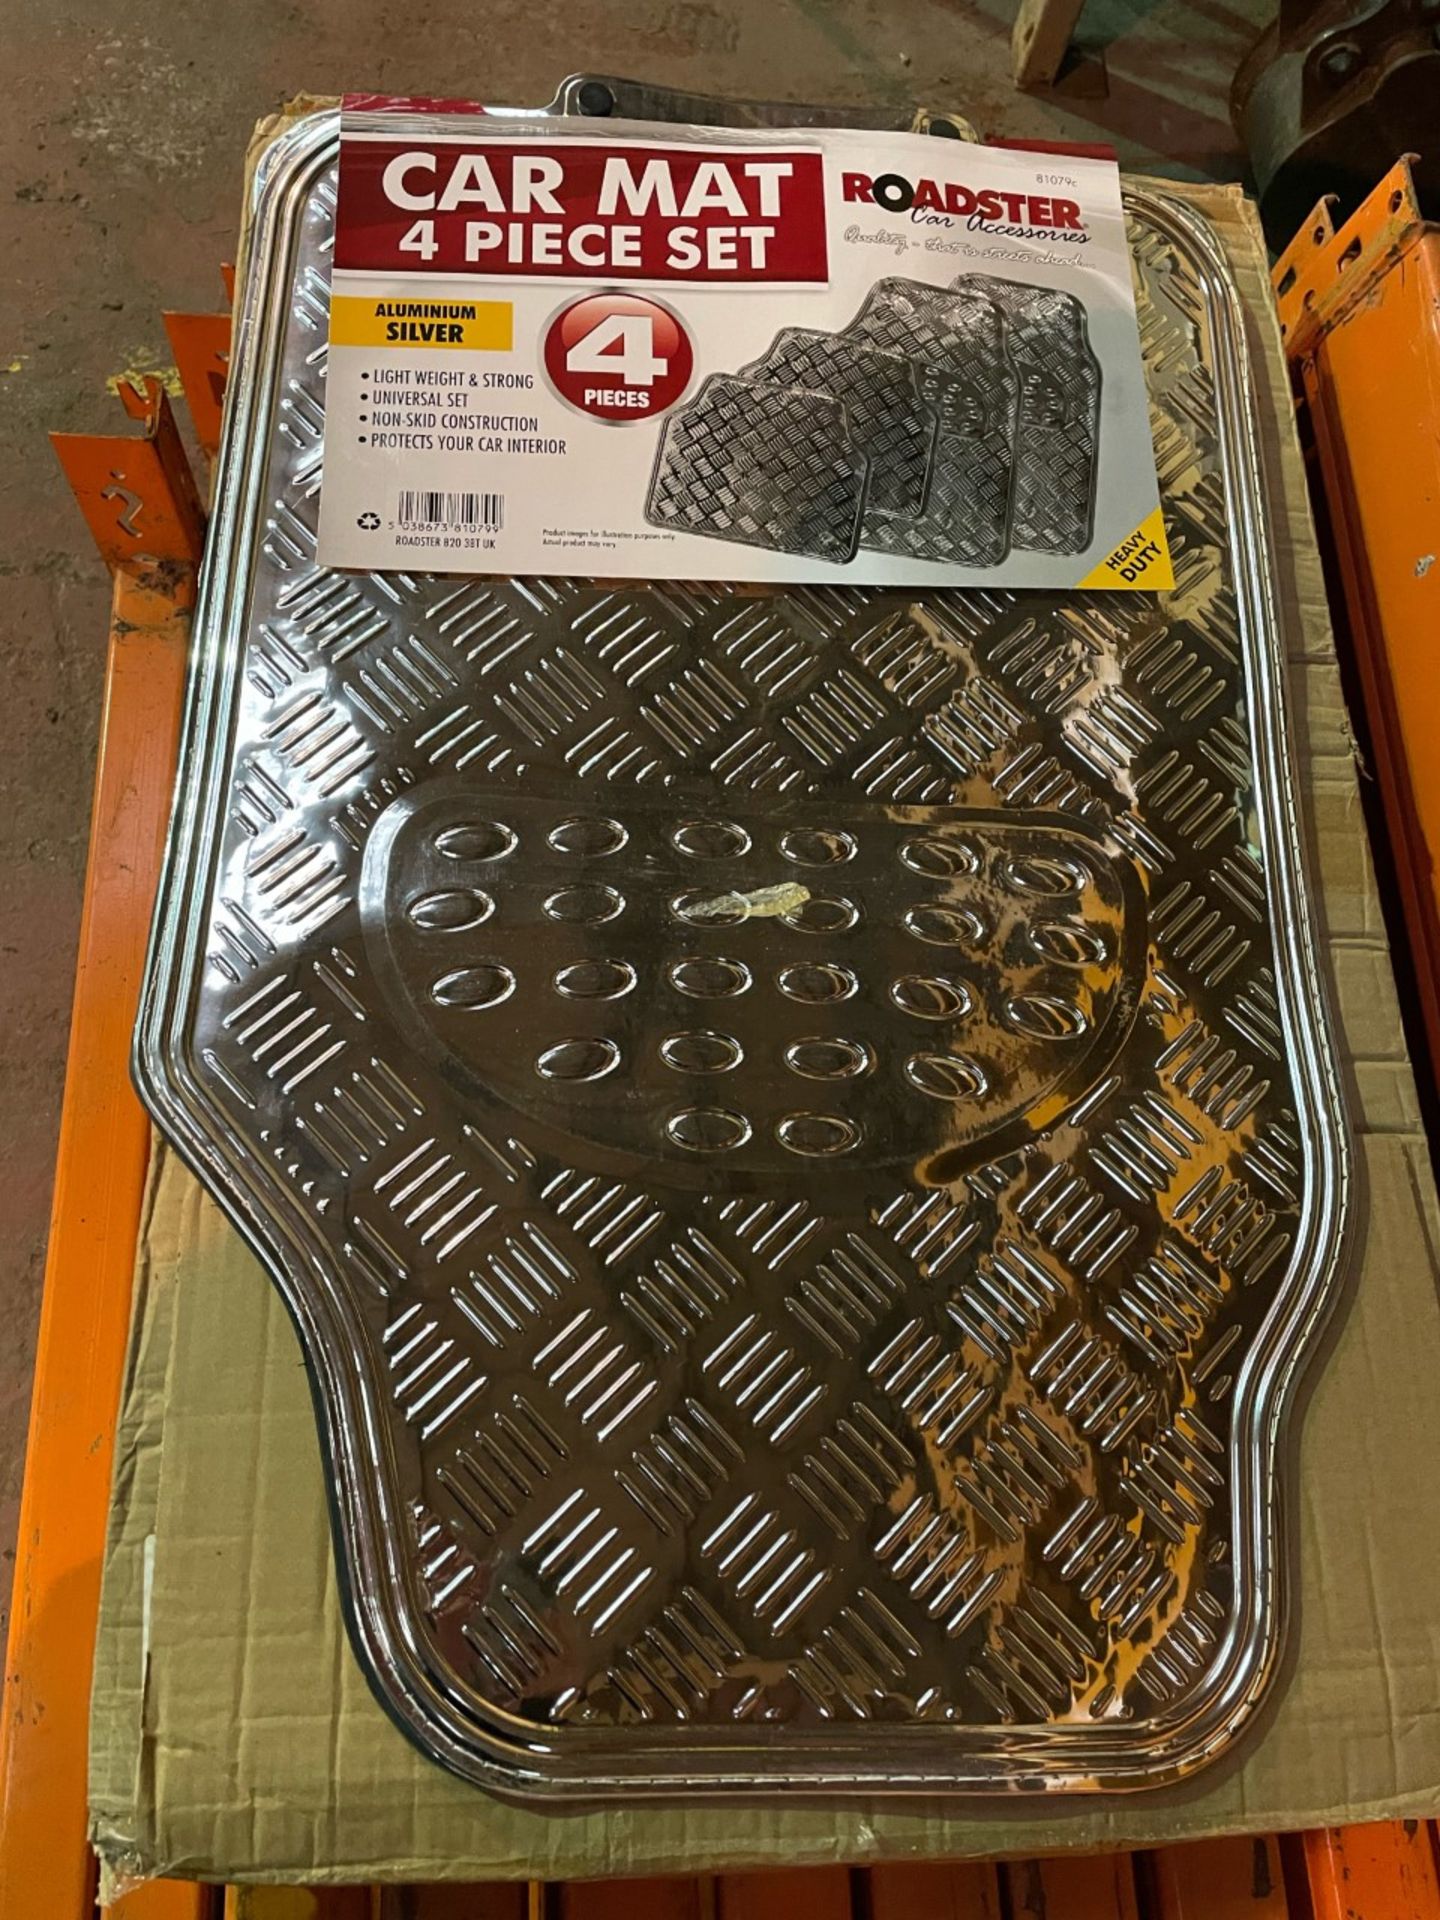 4 piece heavy duty car mat set aluminium effect. Brand new